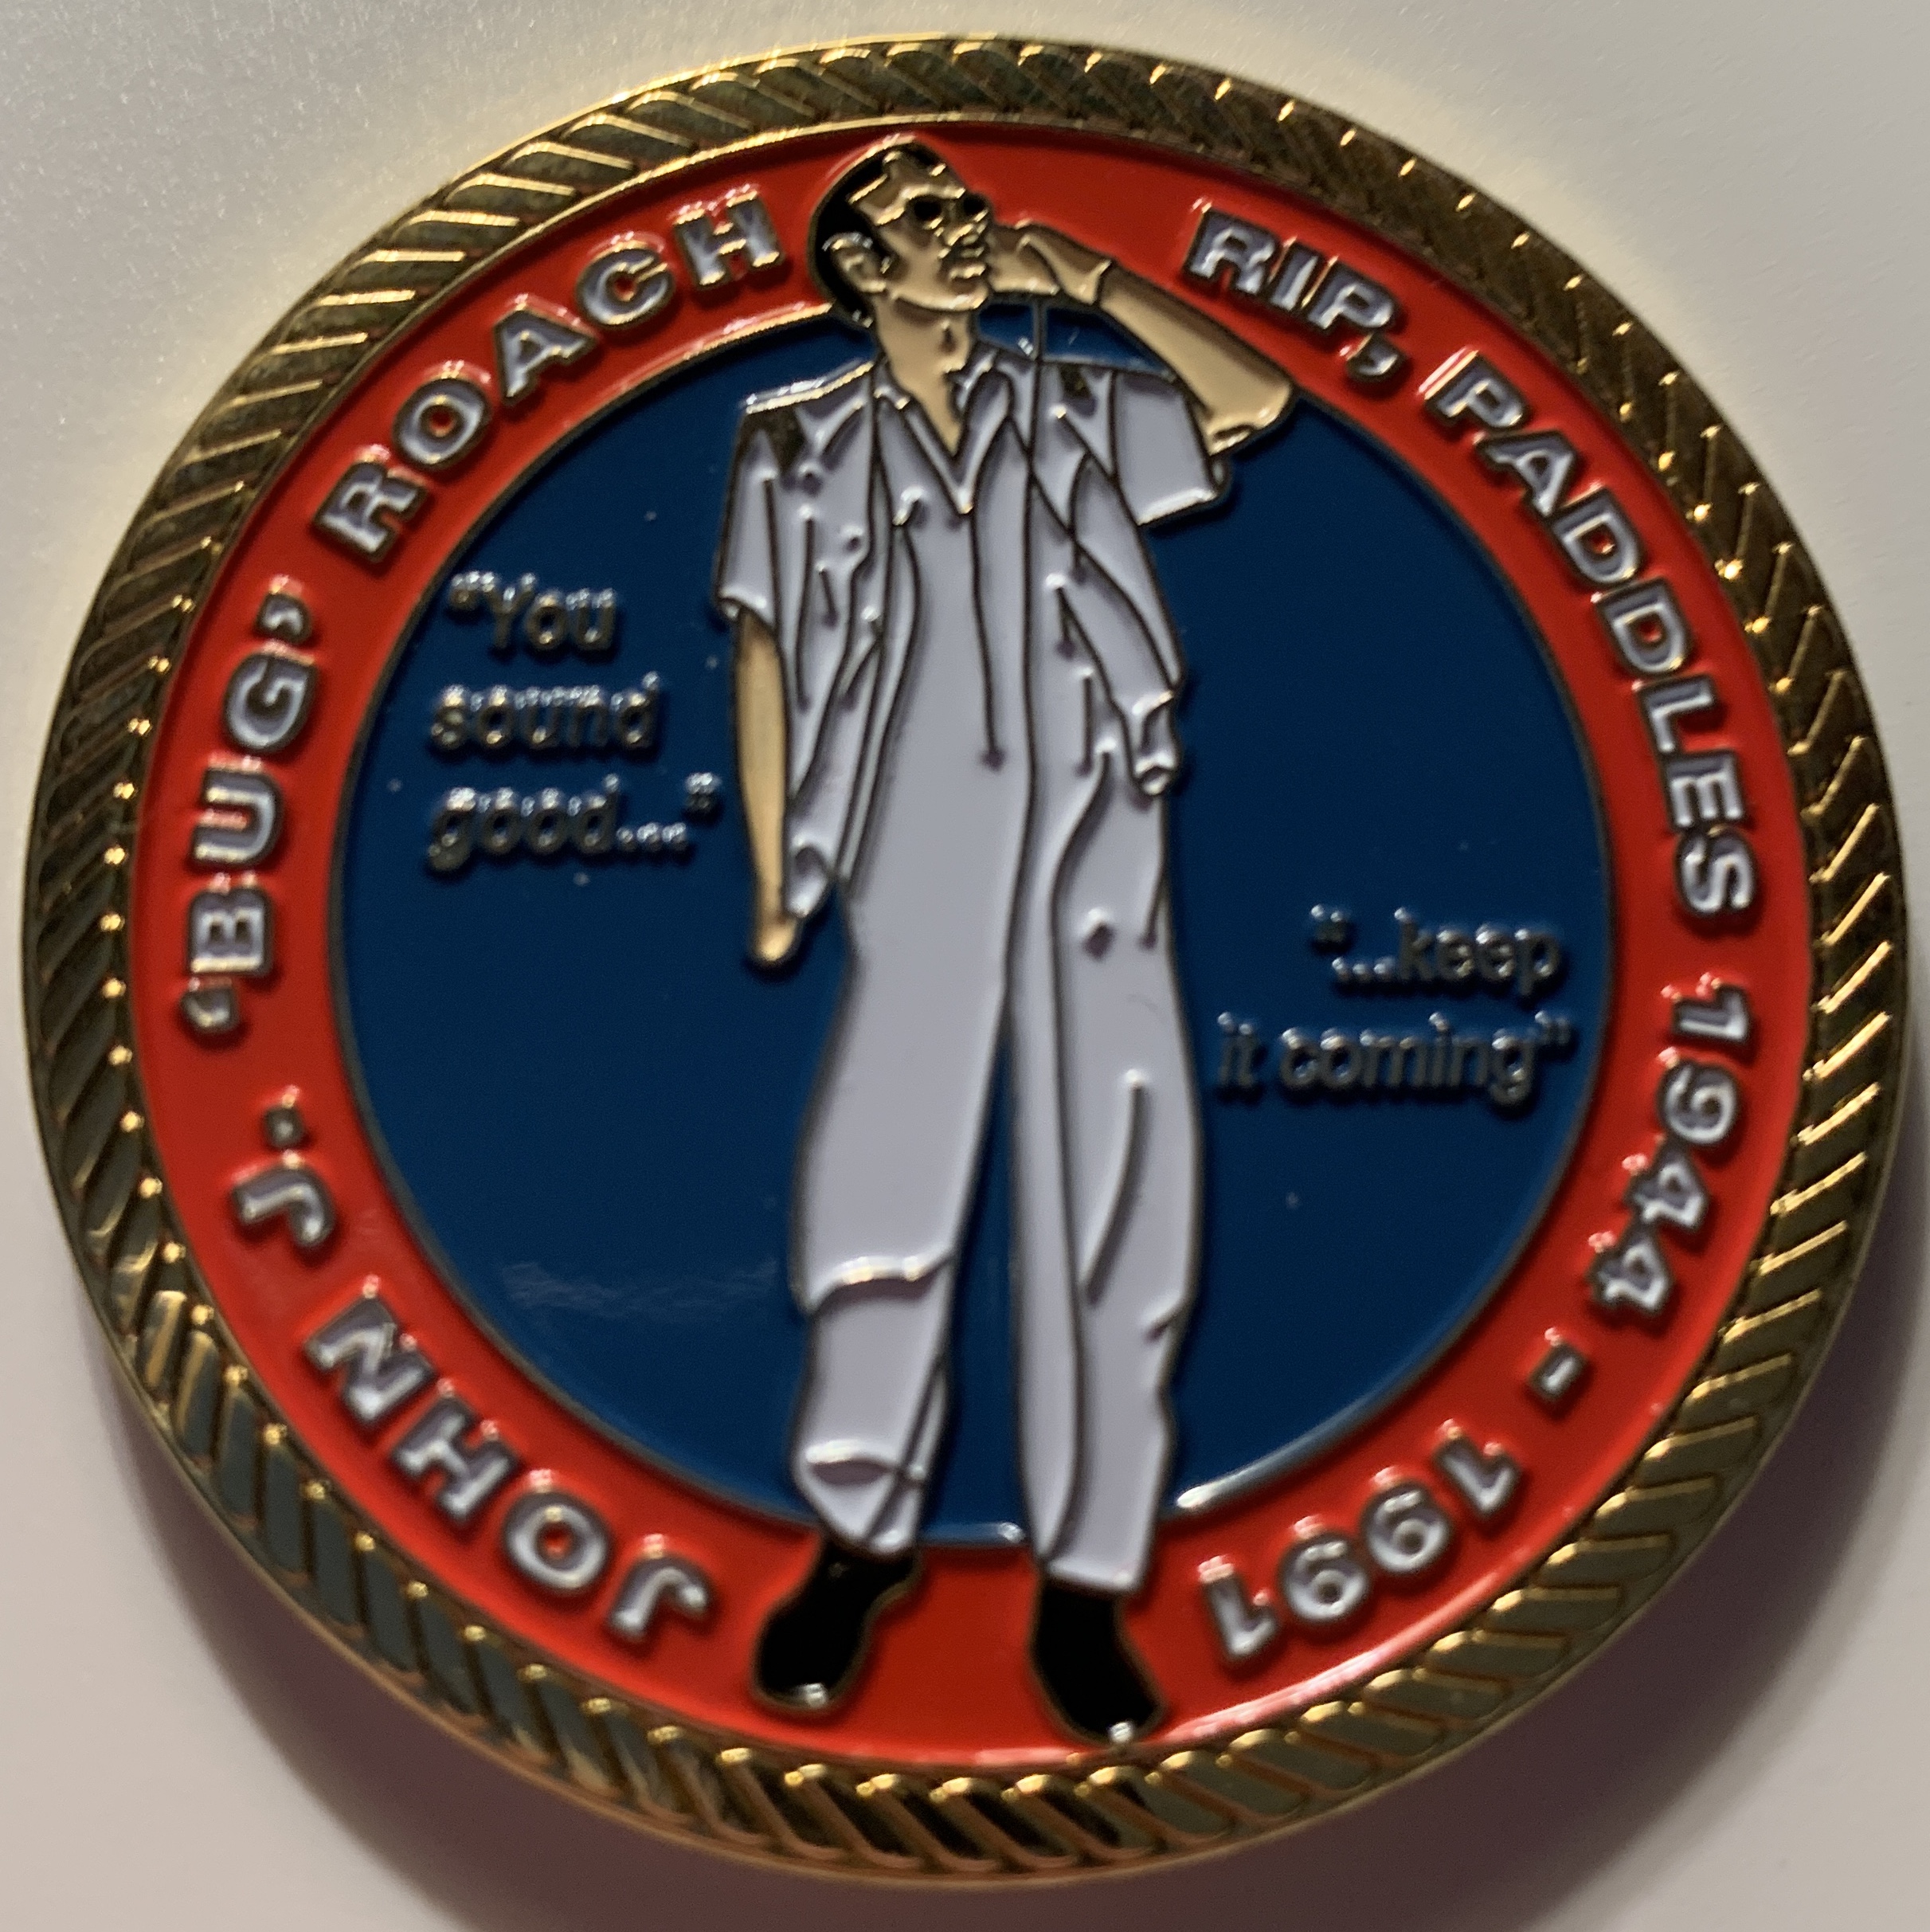 A-7E John *BUG* ROACH Commemorative Coin (Front)